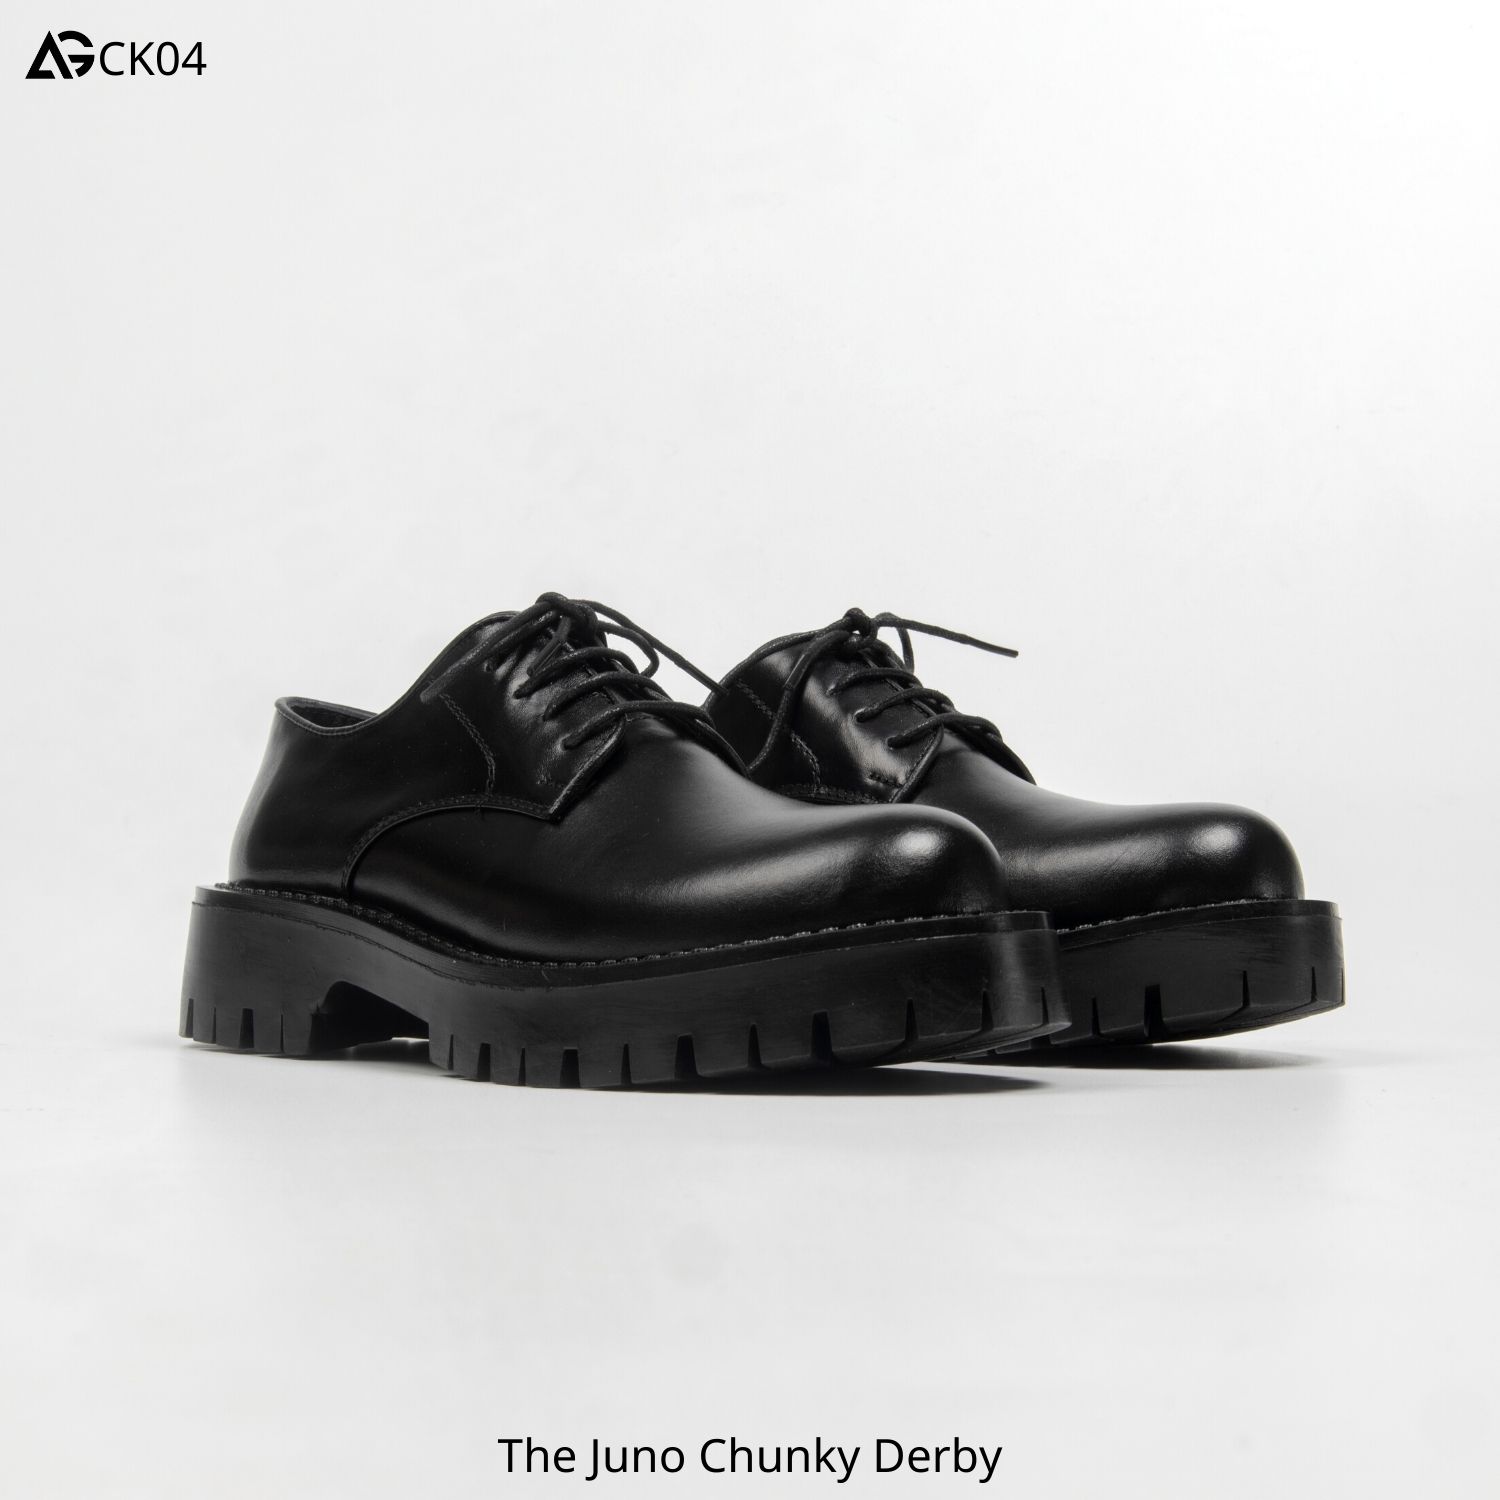 Giày nam da bò cao cấp nhập khẩu handmade The Juno Chunky Derby August CK04  bảo hành 12 tháng